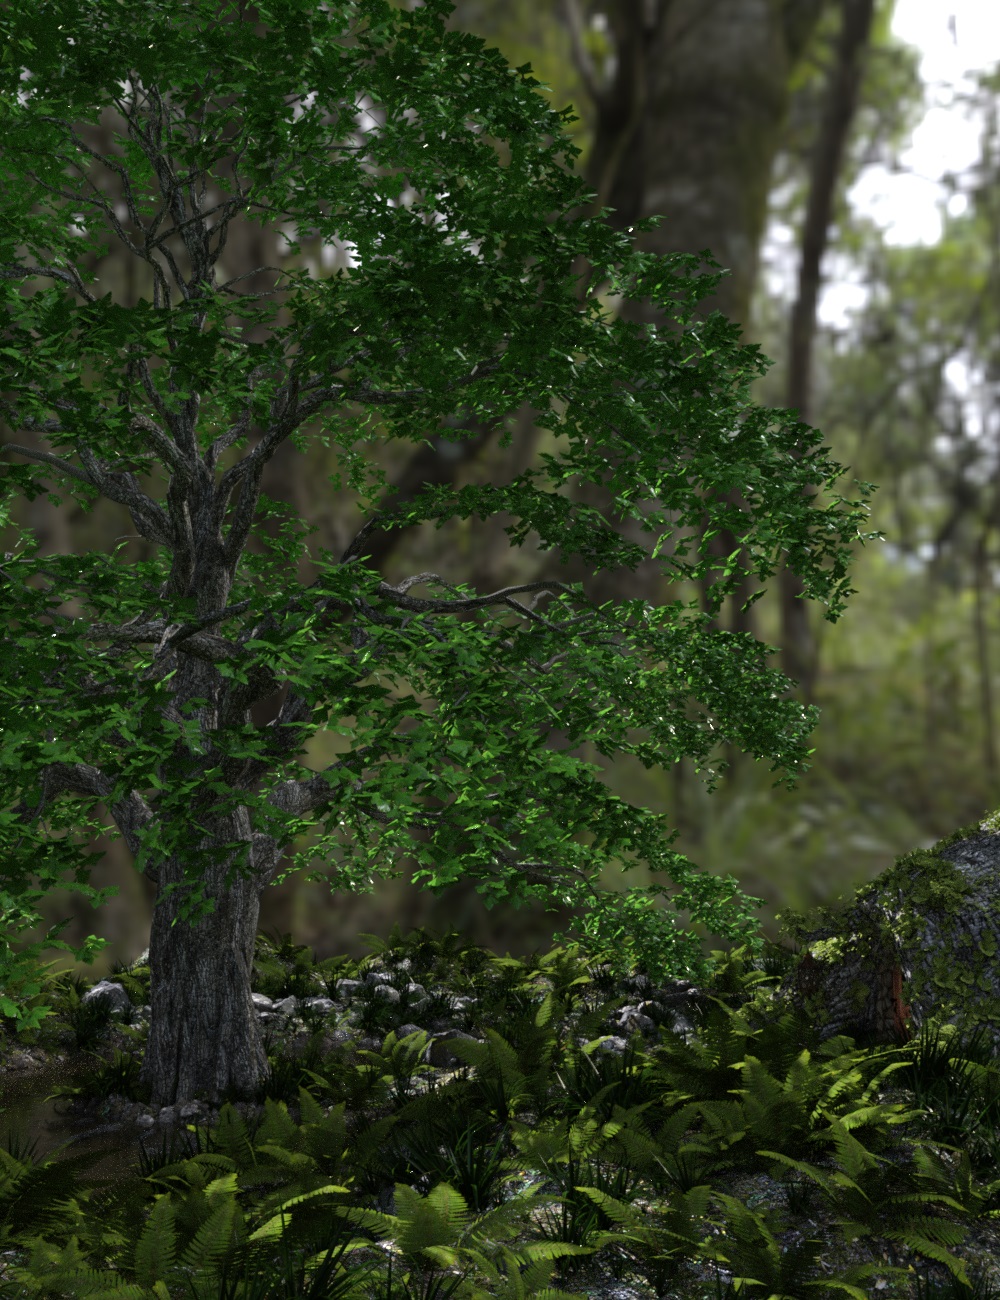 Tree Stump Garden by: Tim82, 3D Models by Daz 3D